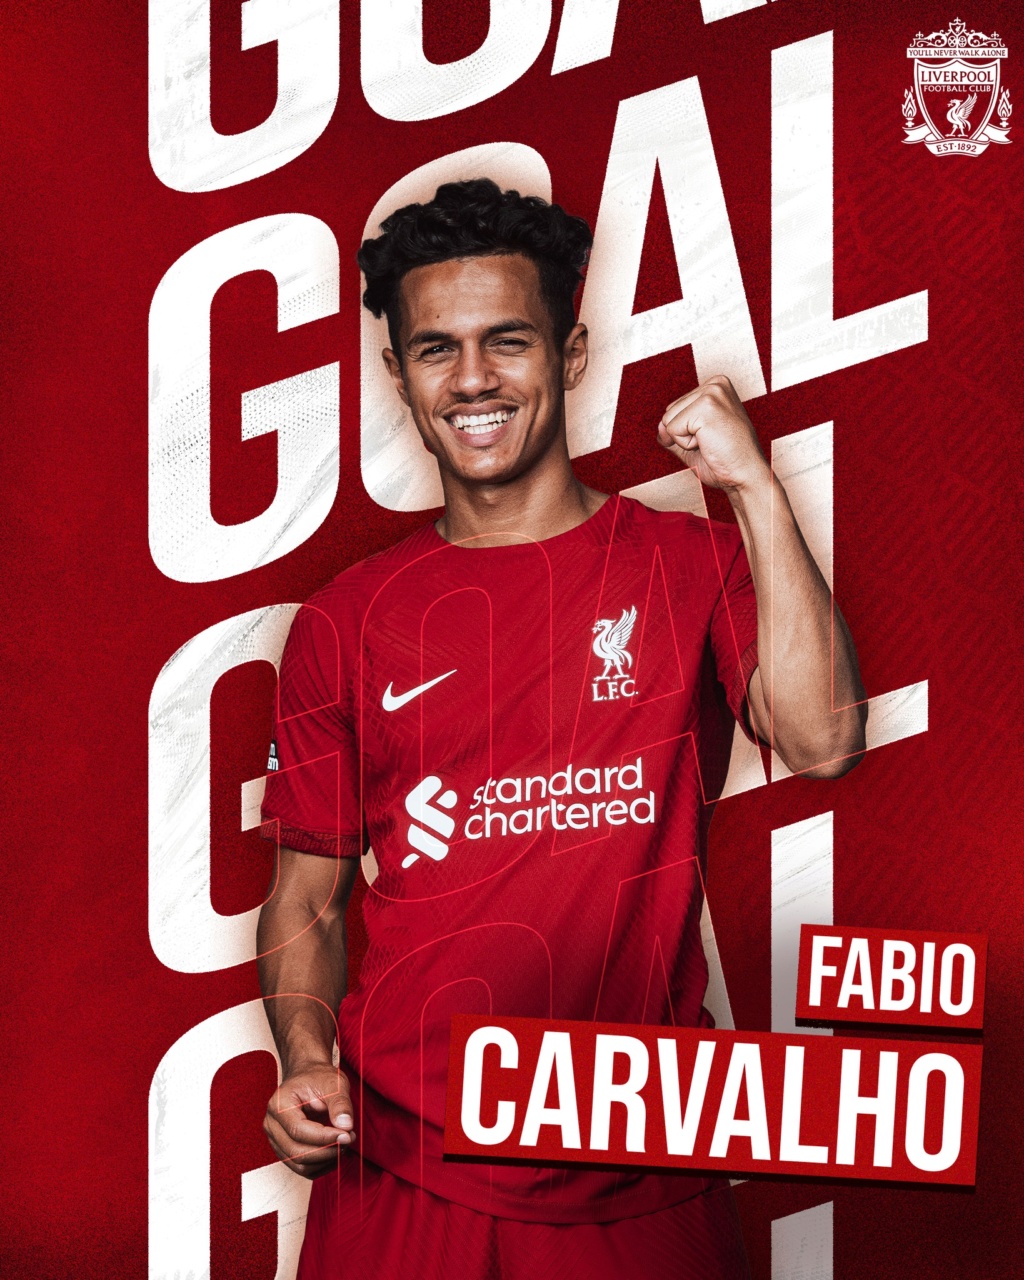 28 Fabio Carvalho - Seite 2 20718